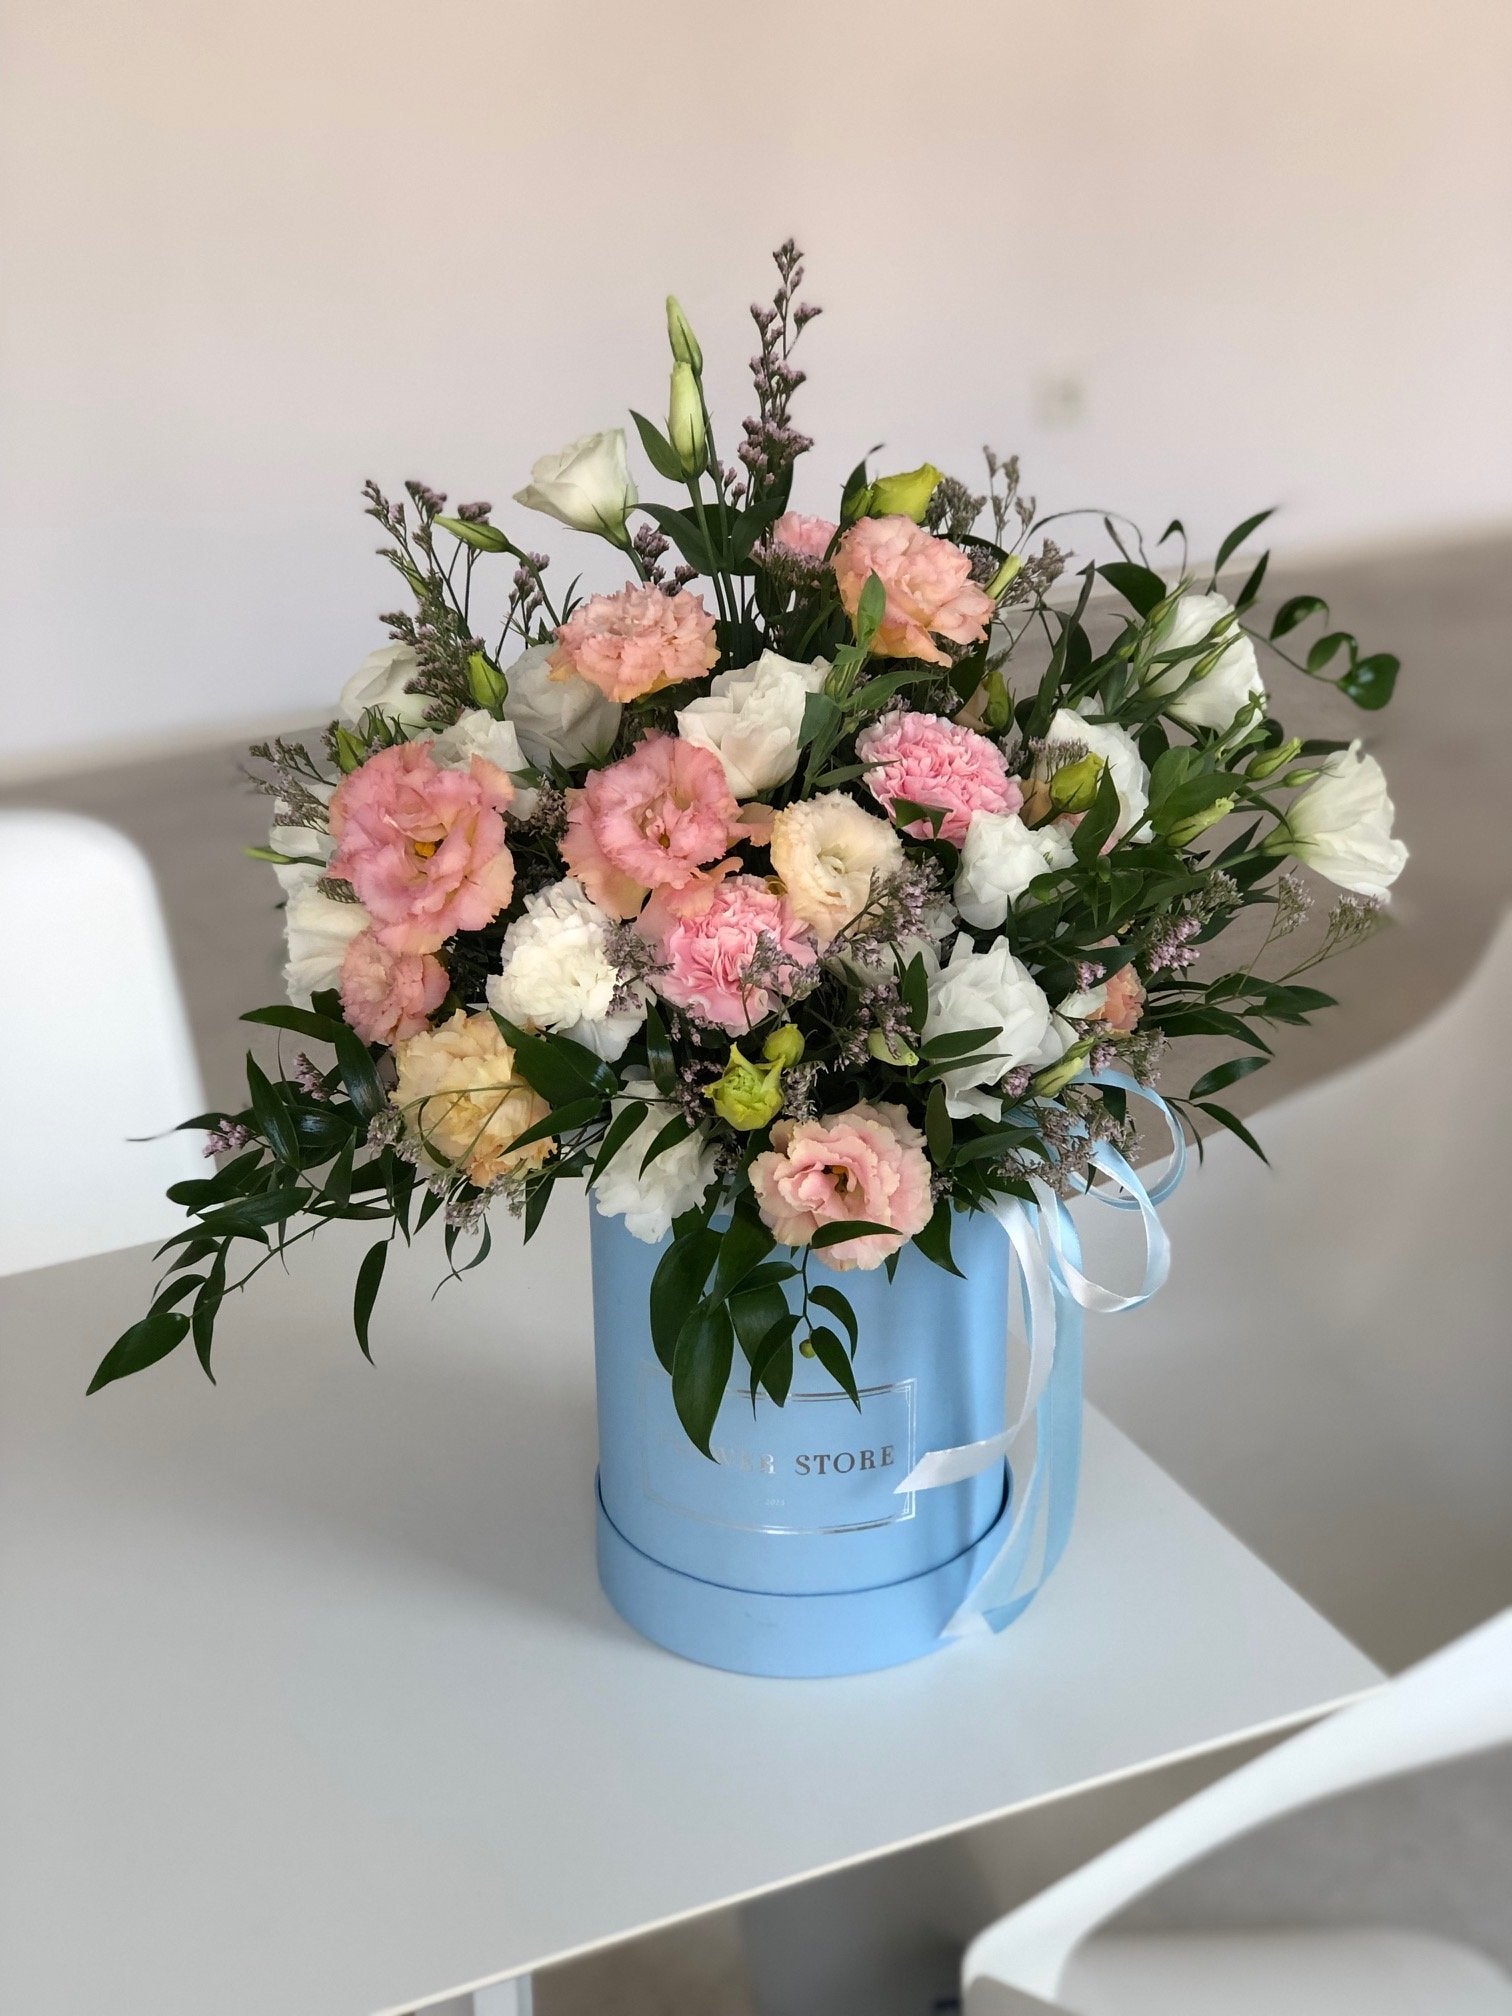 Zwiewna wiosenna kompozycja w dużym błękitnym flowerboxie - kwiaty żywe